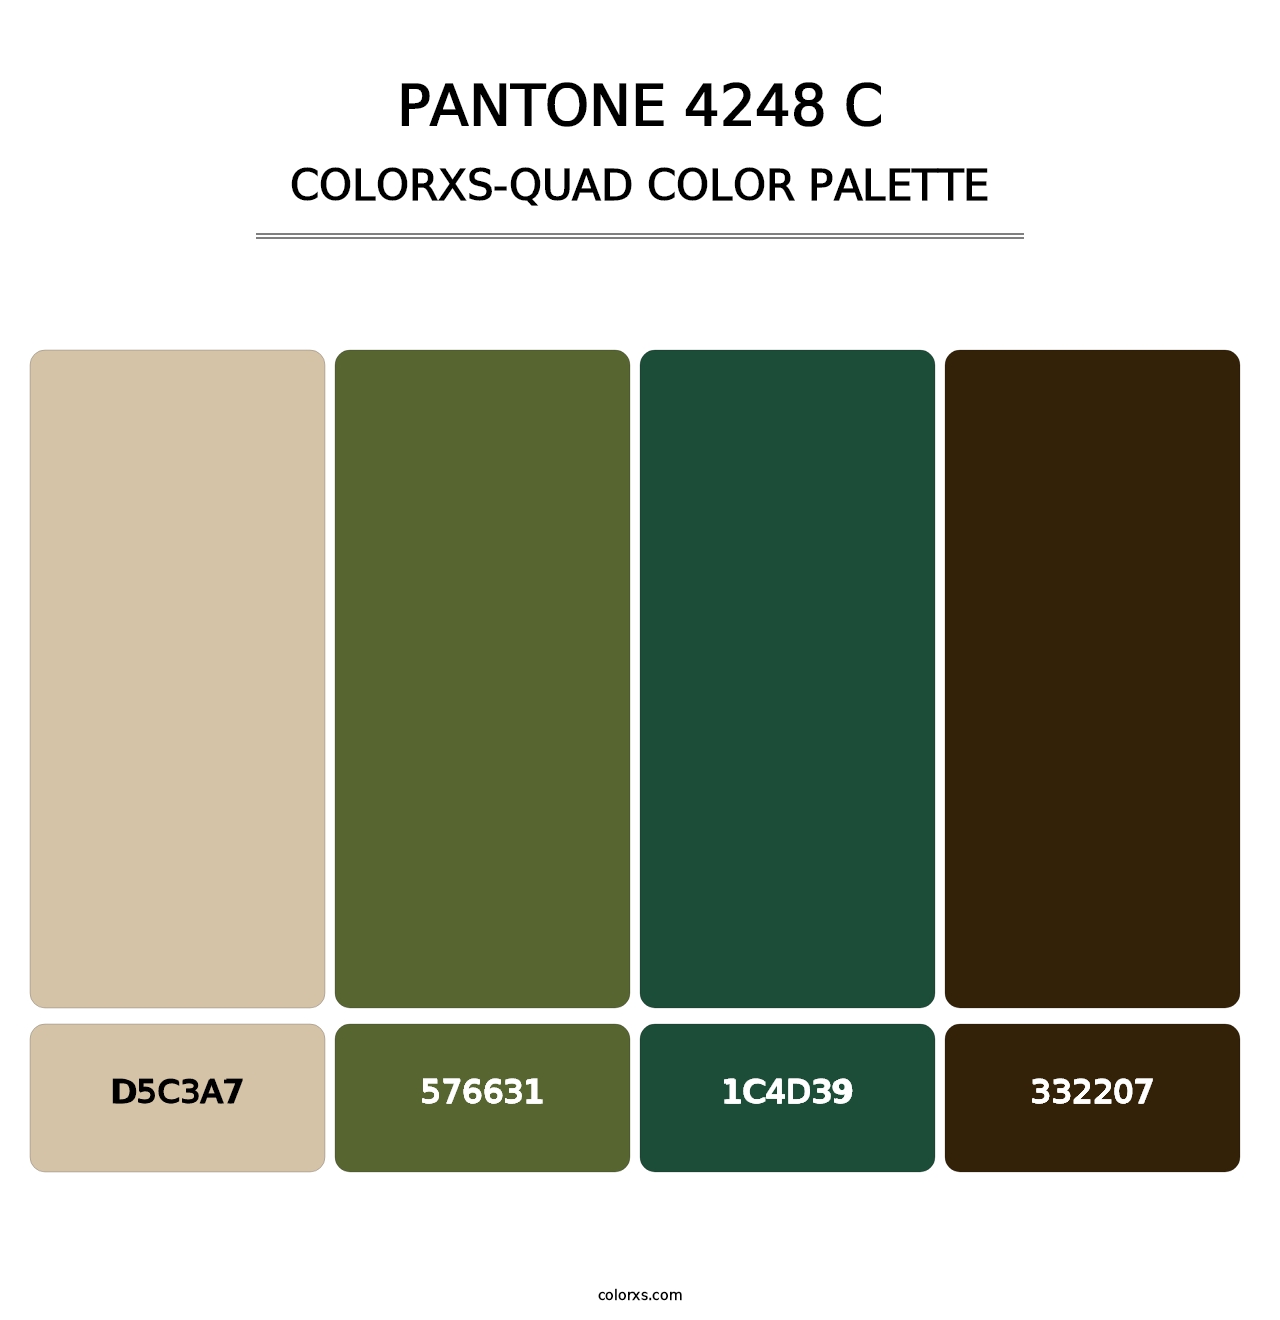 PANTONE 4248 C - Colorxs Quad Palette